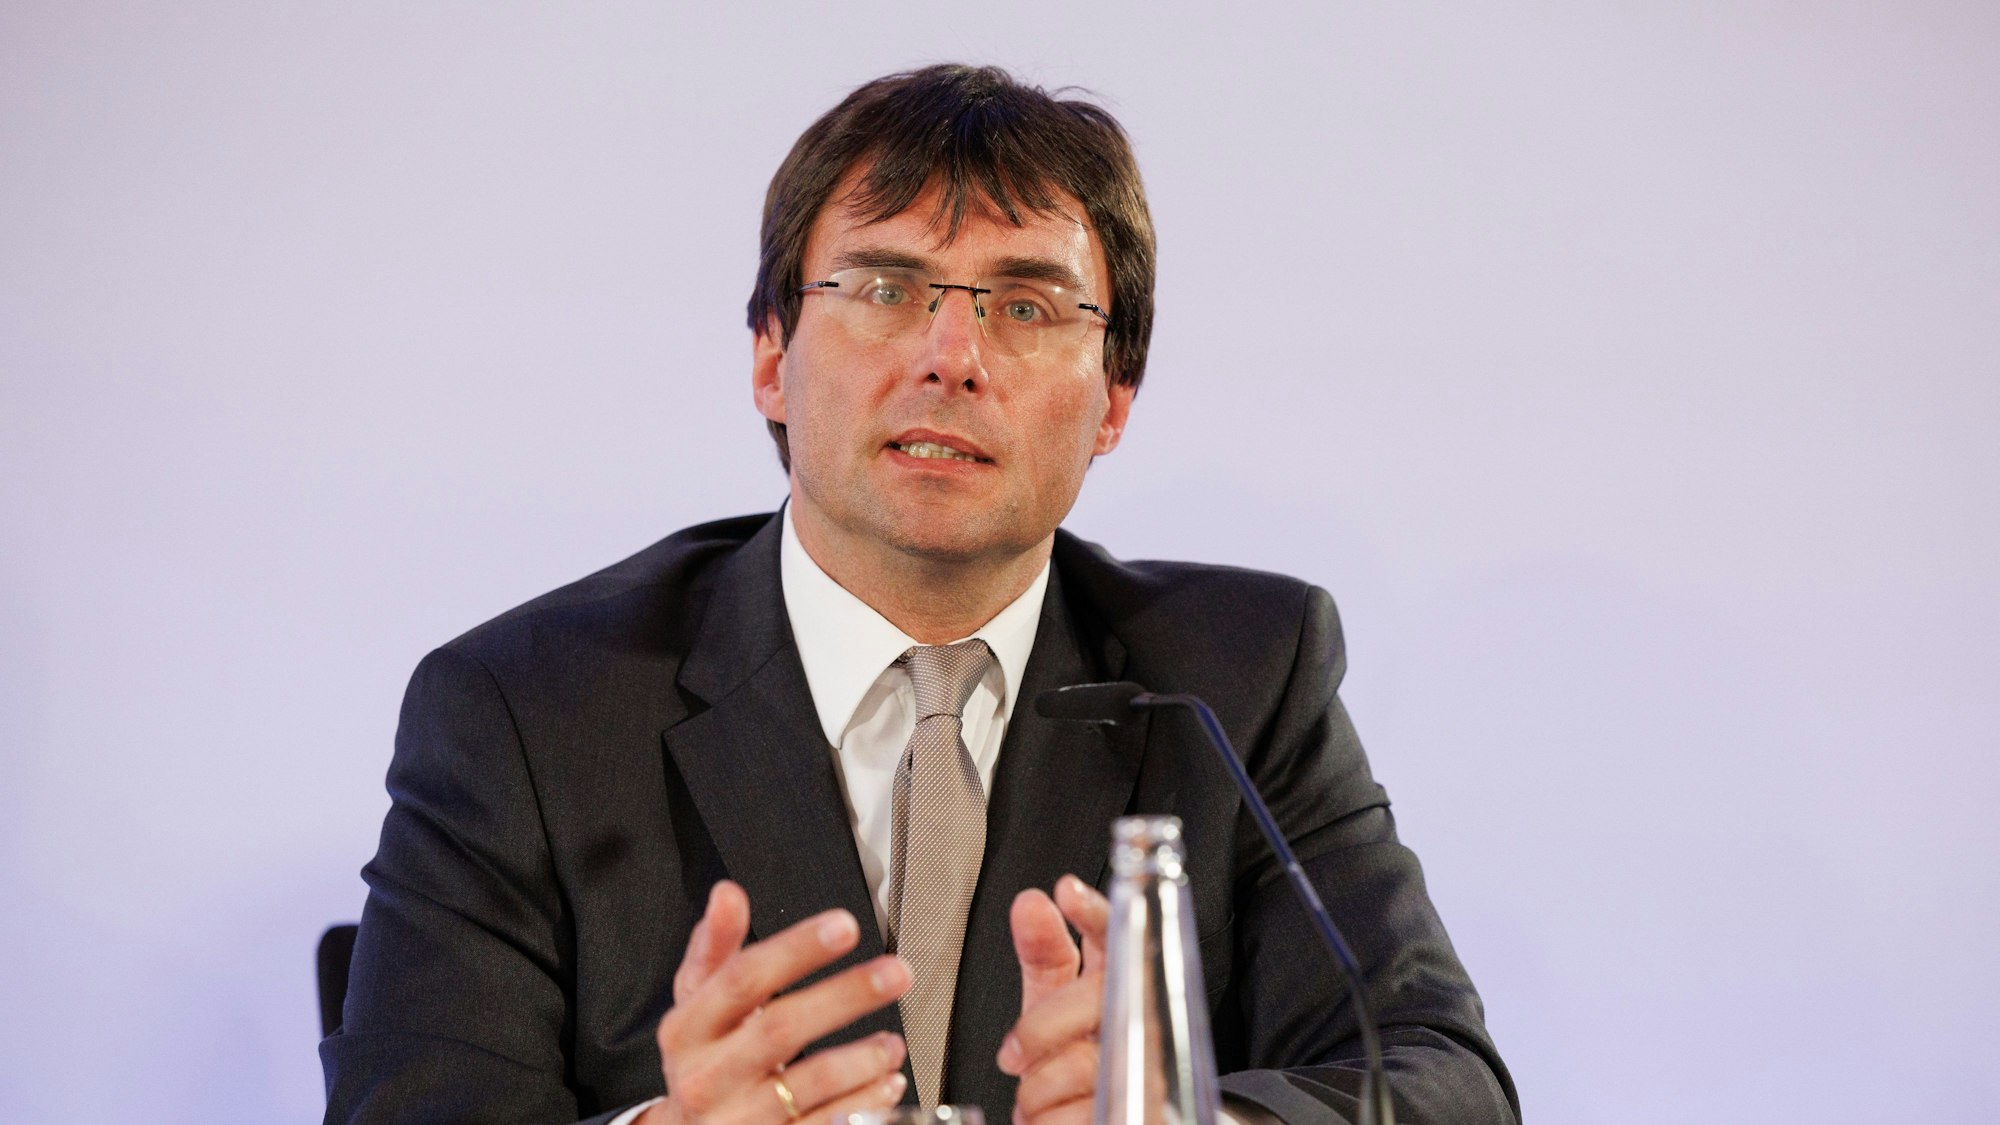 Marcus Optendrenk (CDU), Finanzminister von Nordrhein-Westfalen